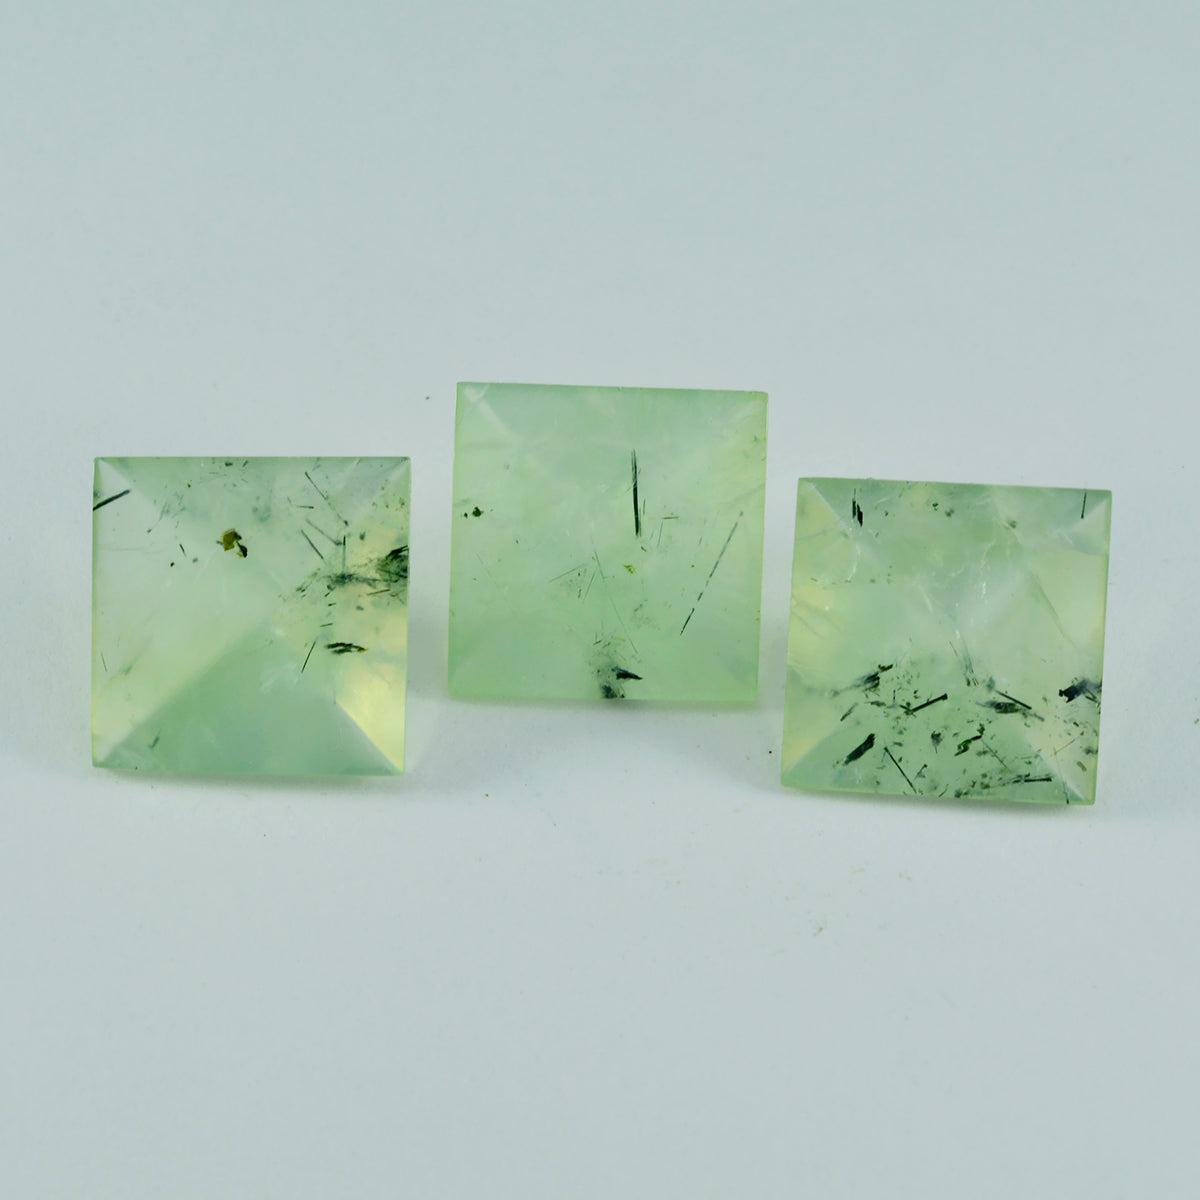 Riyogems 1 Stück grüner Prehnit, facettiert, 12 x 12 mm, quadratische Form, schöner Qualitäts-Edelstein